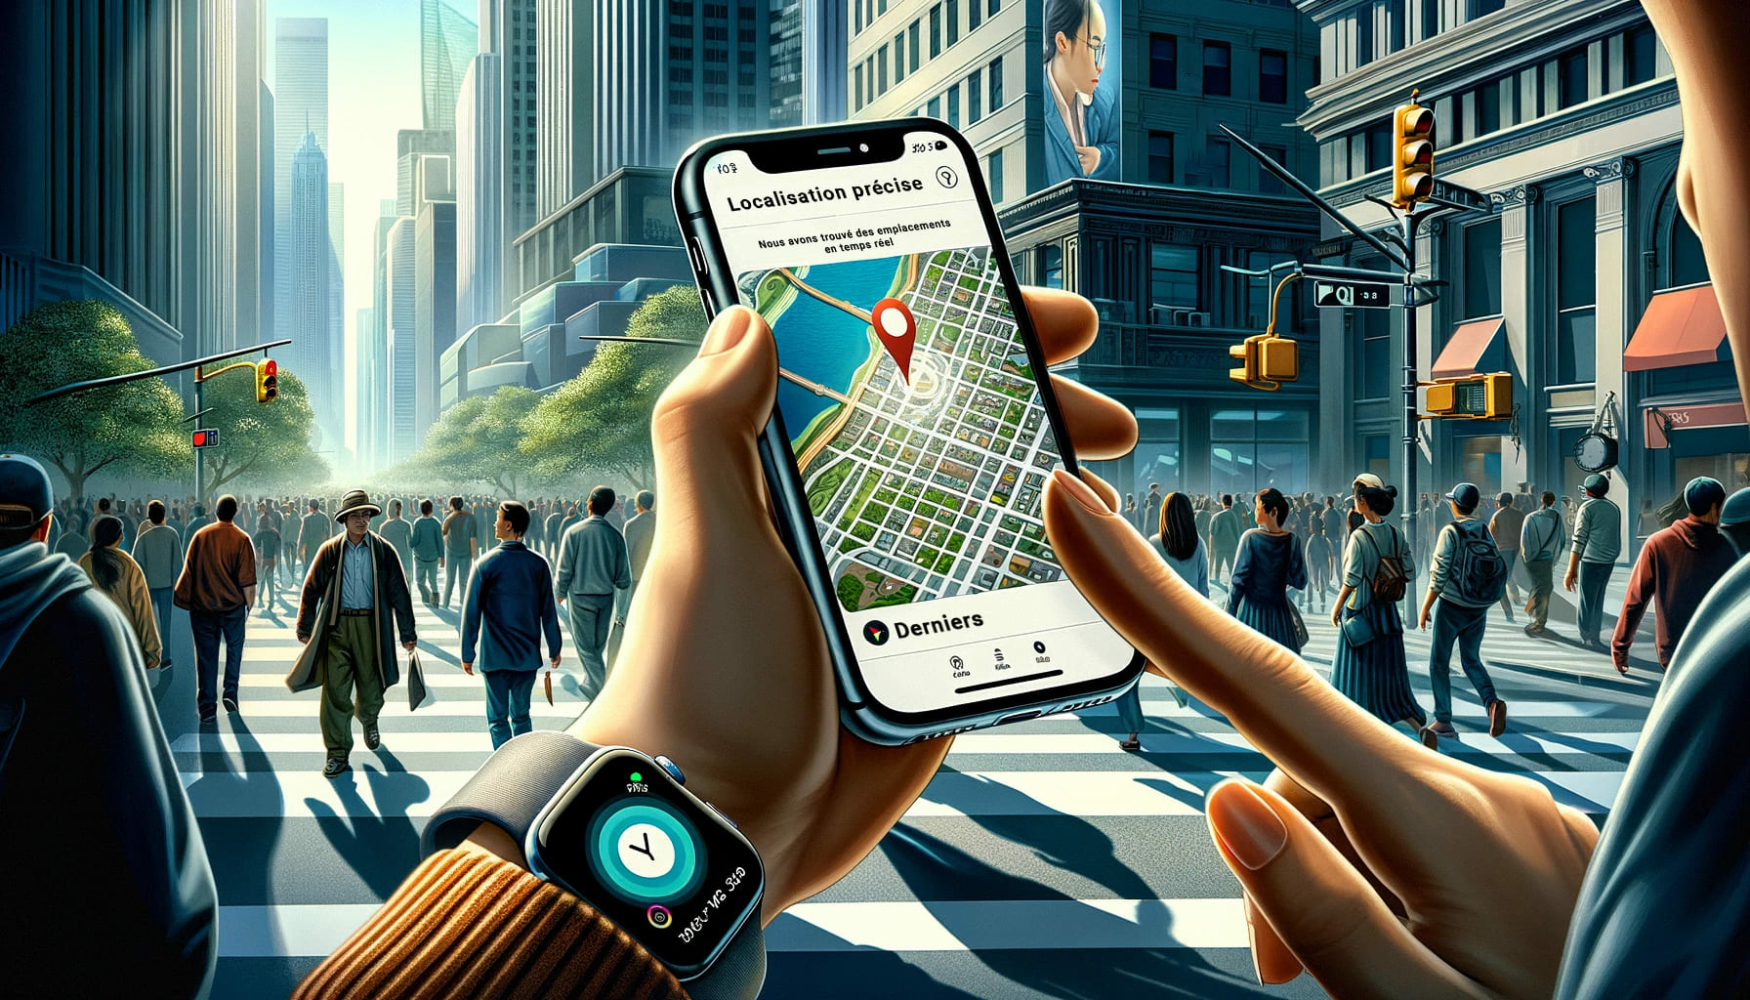 un homme dans une ville parmi de nombreuses personnes tient un iphone sur lequel est affichée une carte avec une icône de localisation